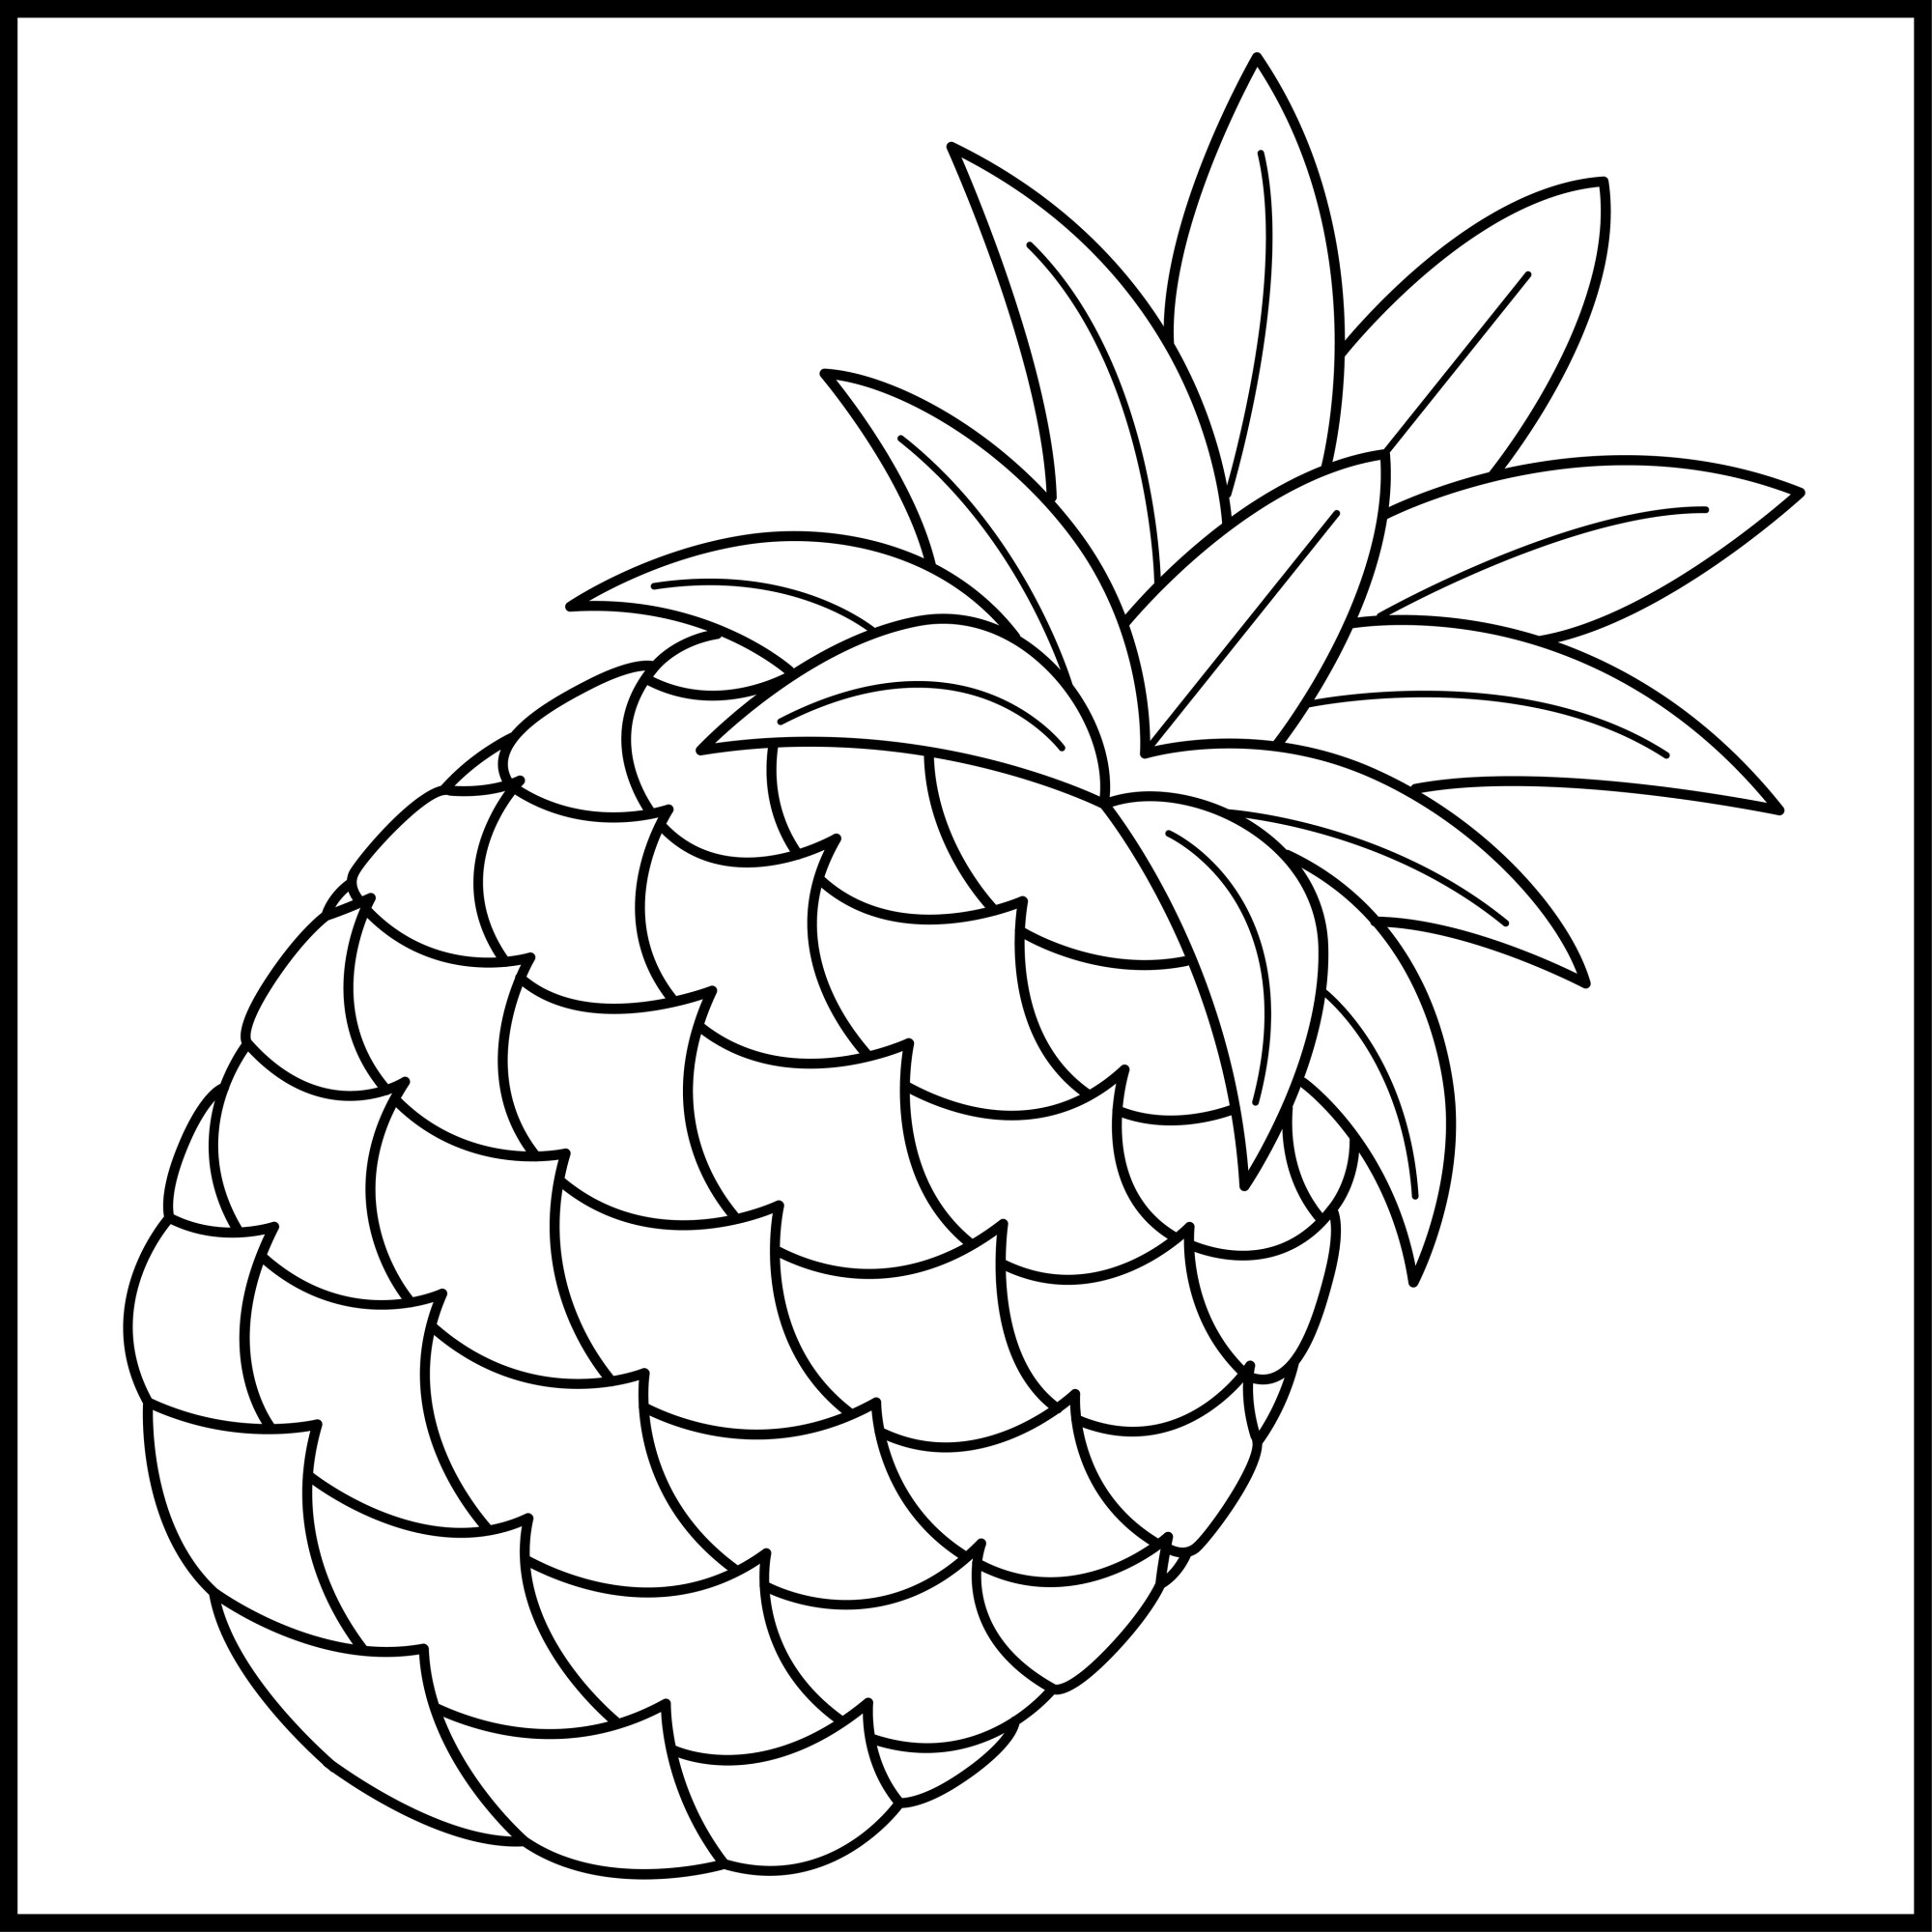 Раскраска для детей: тропический фрукт ананас